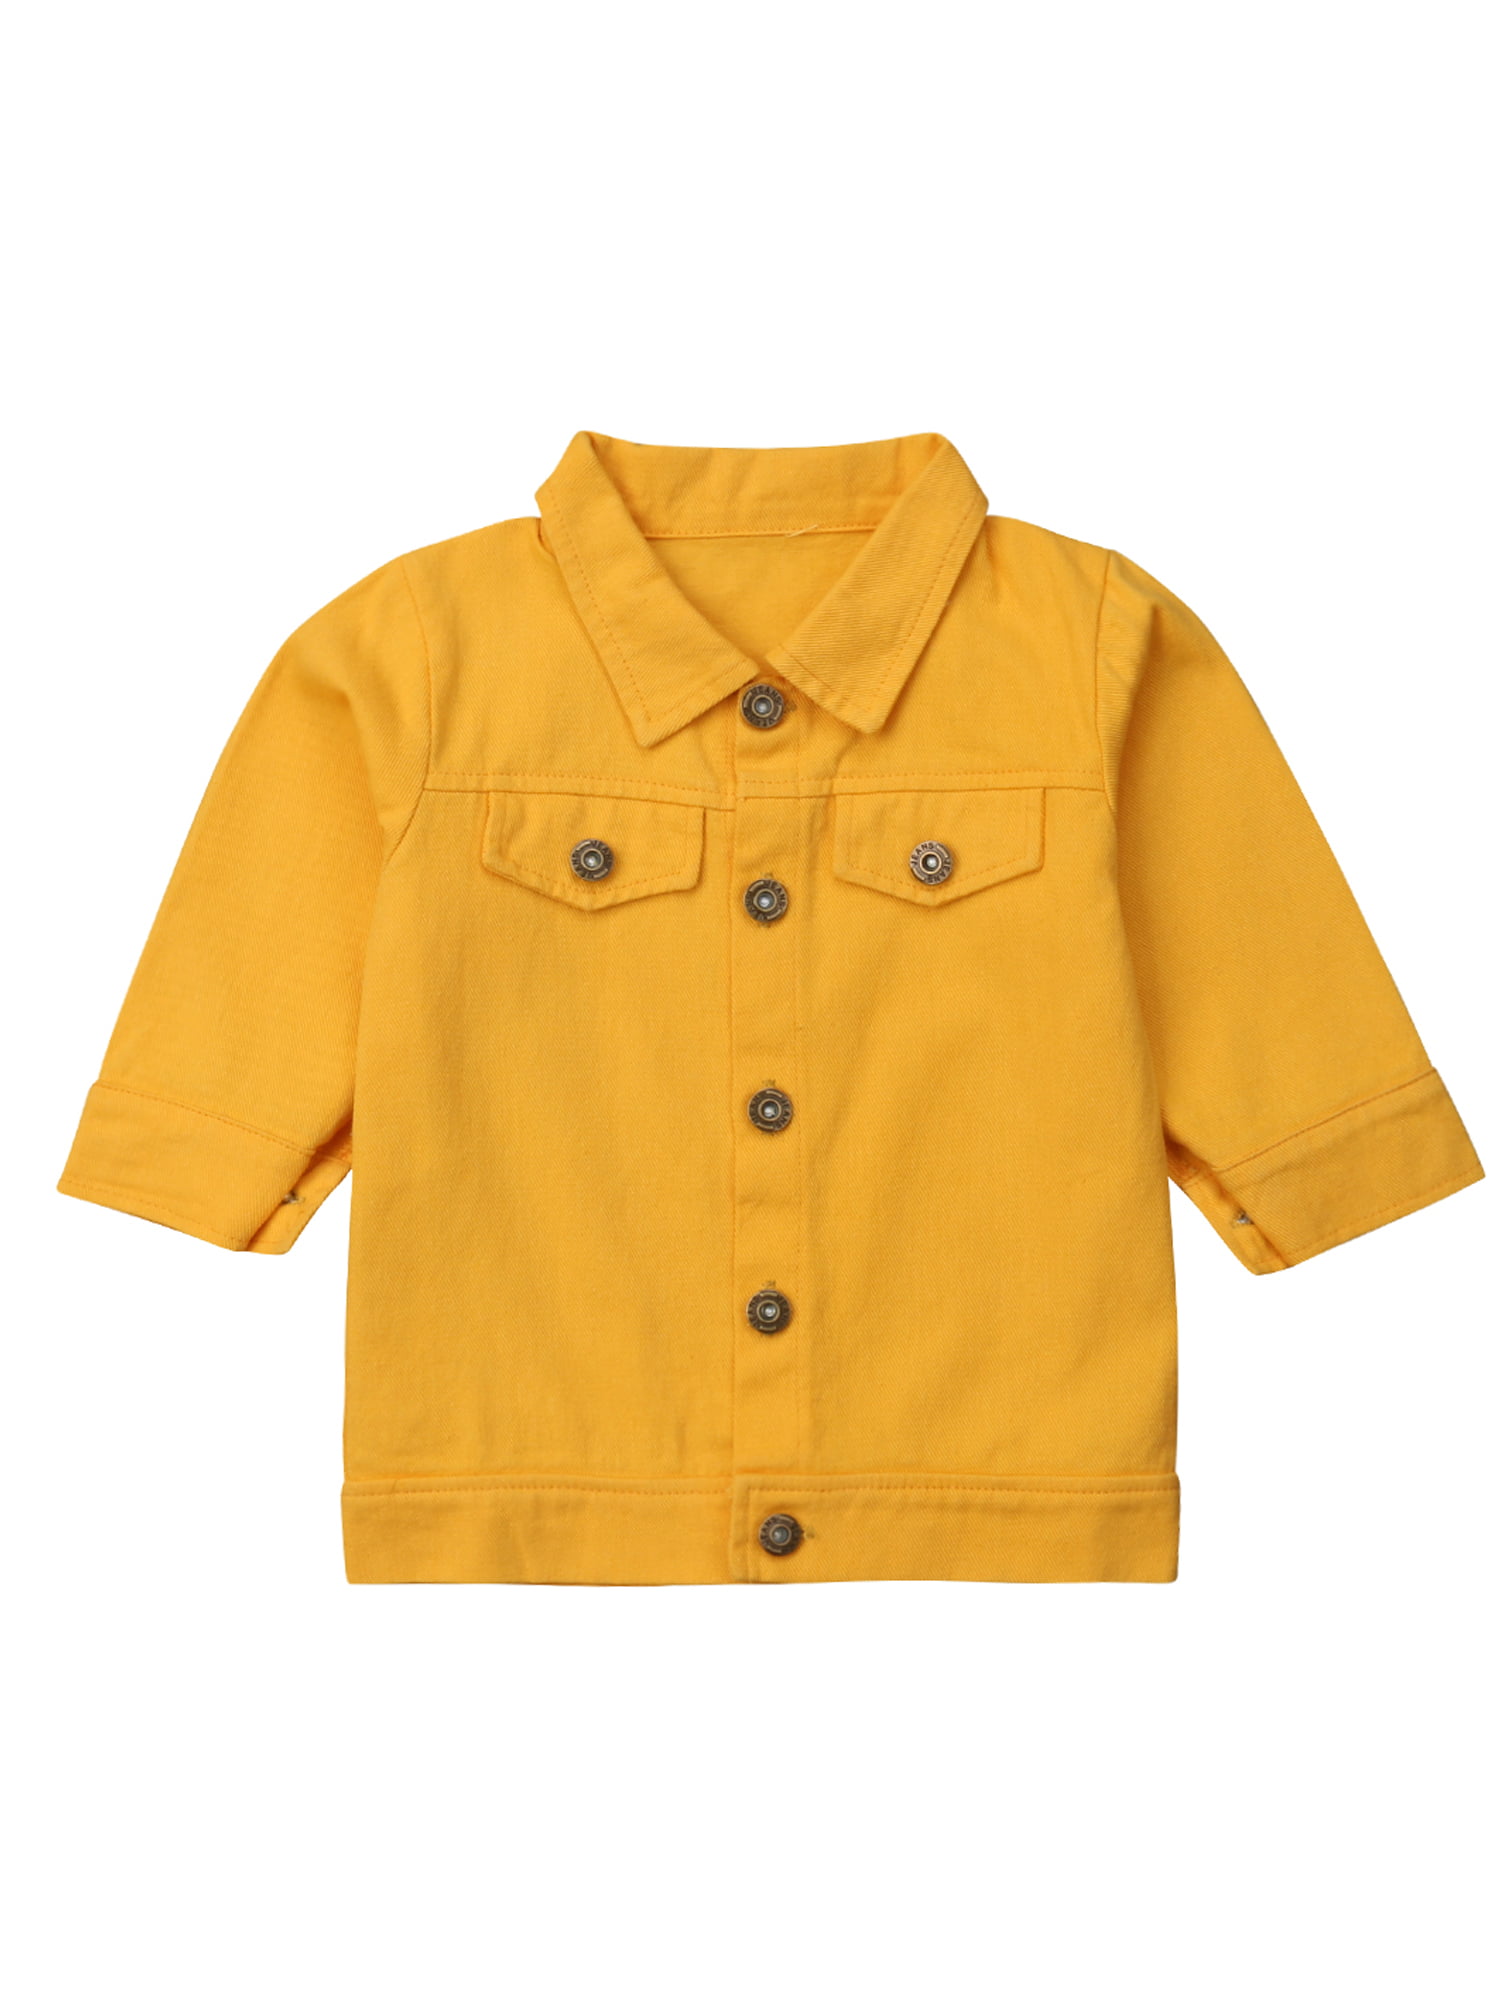 Hirigin Baby Girls Yellow Denim Jacket 